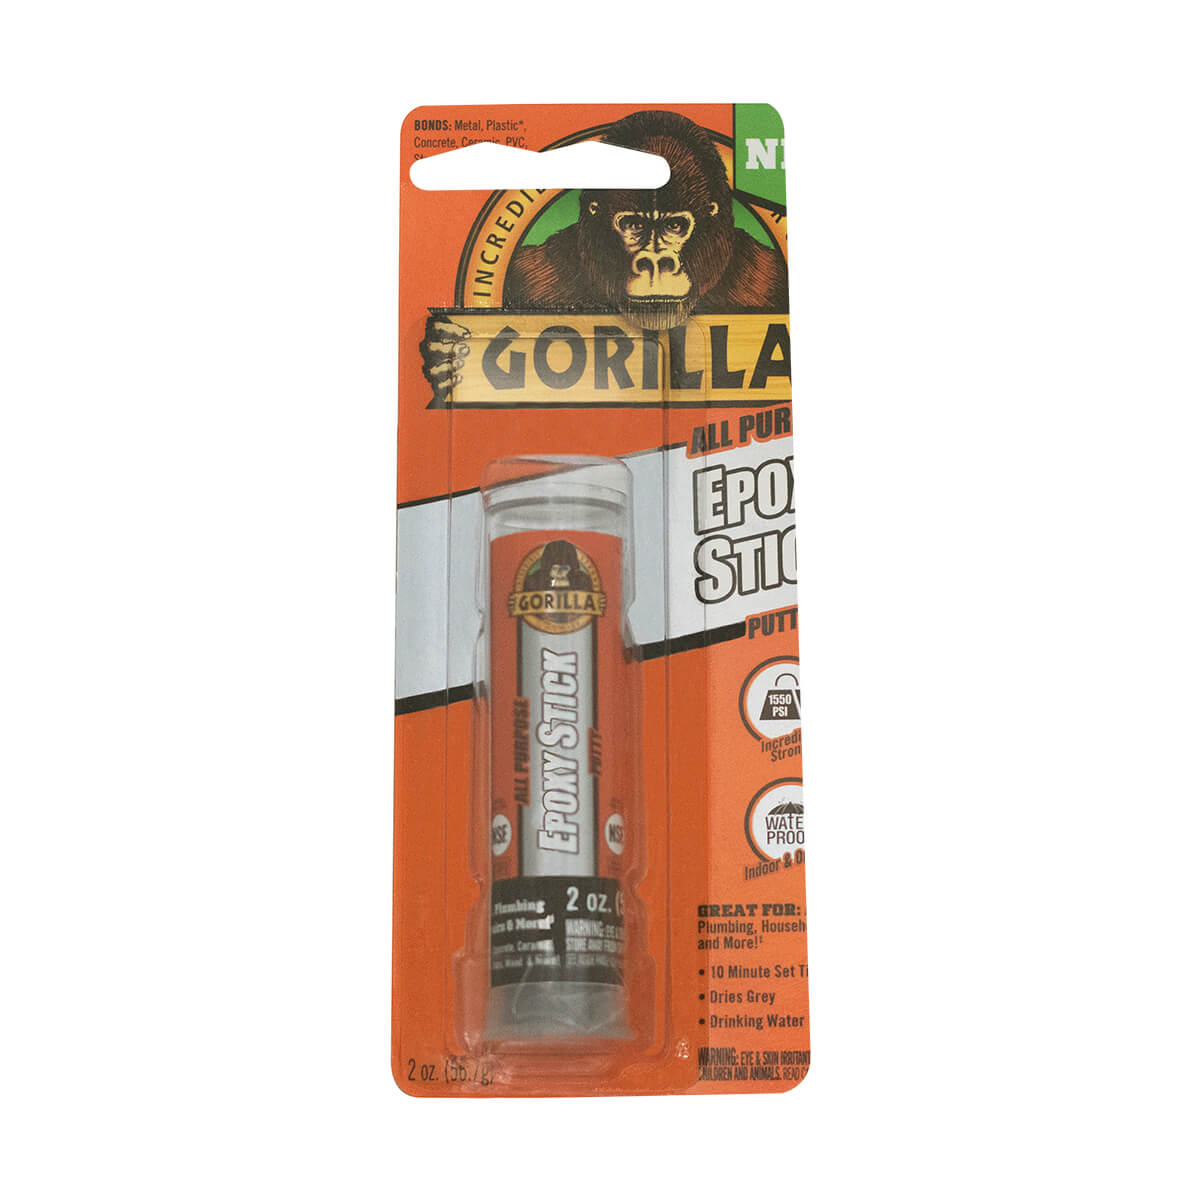 Gorilla Epoxy Stick - 56.7 g